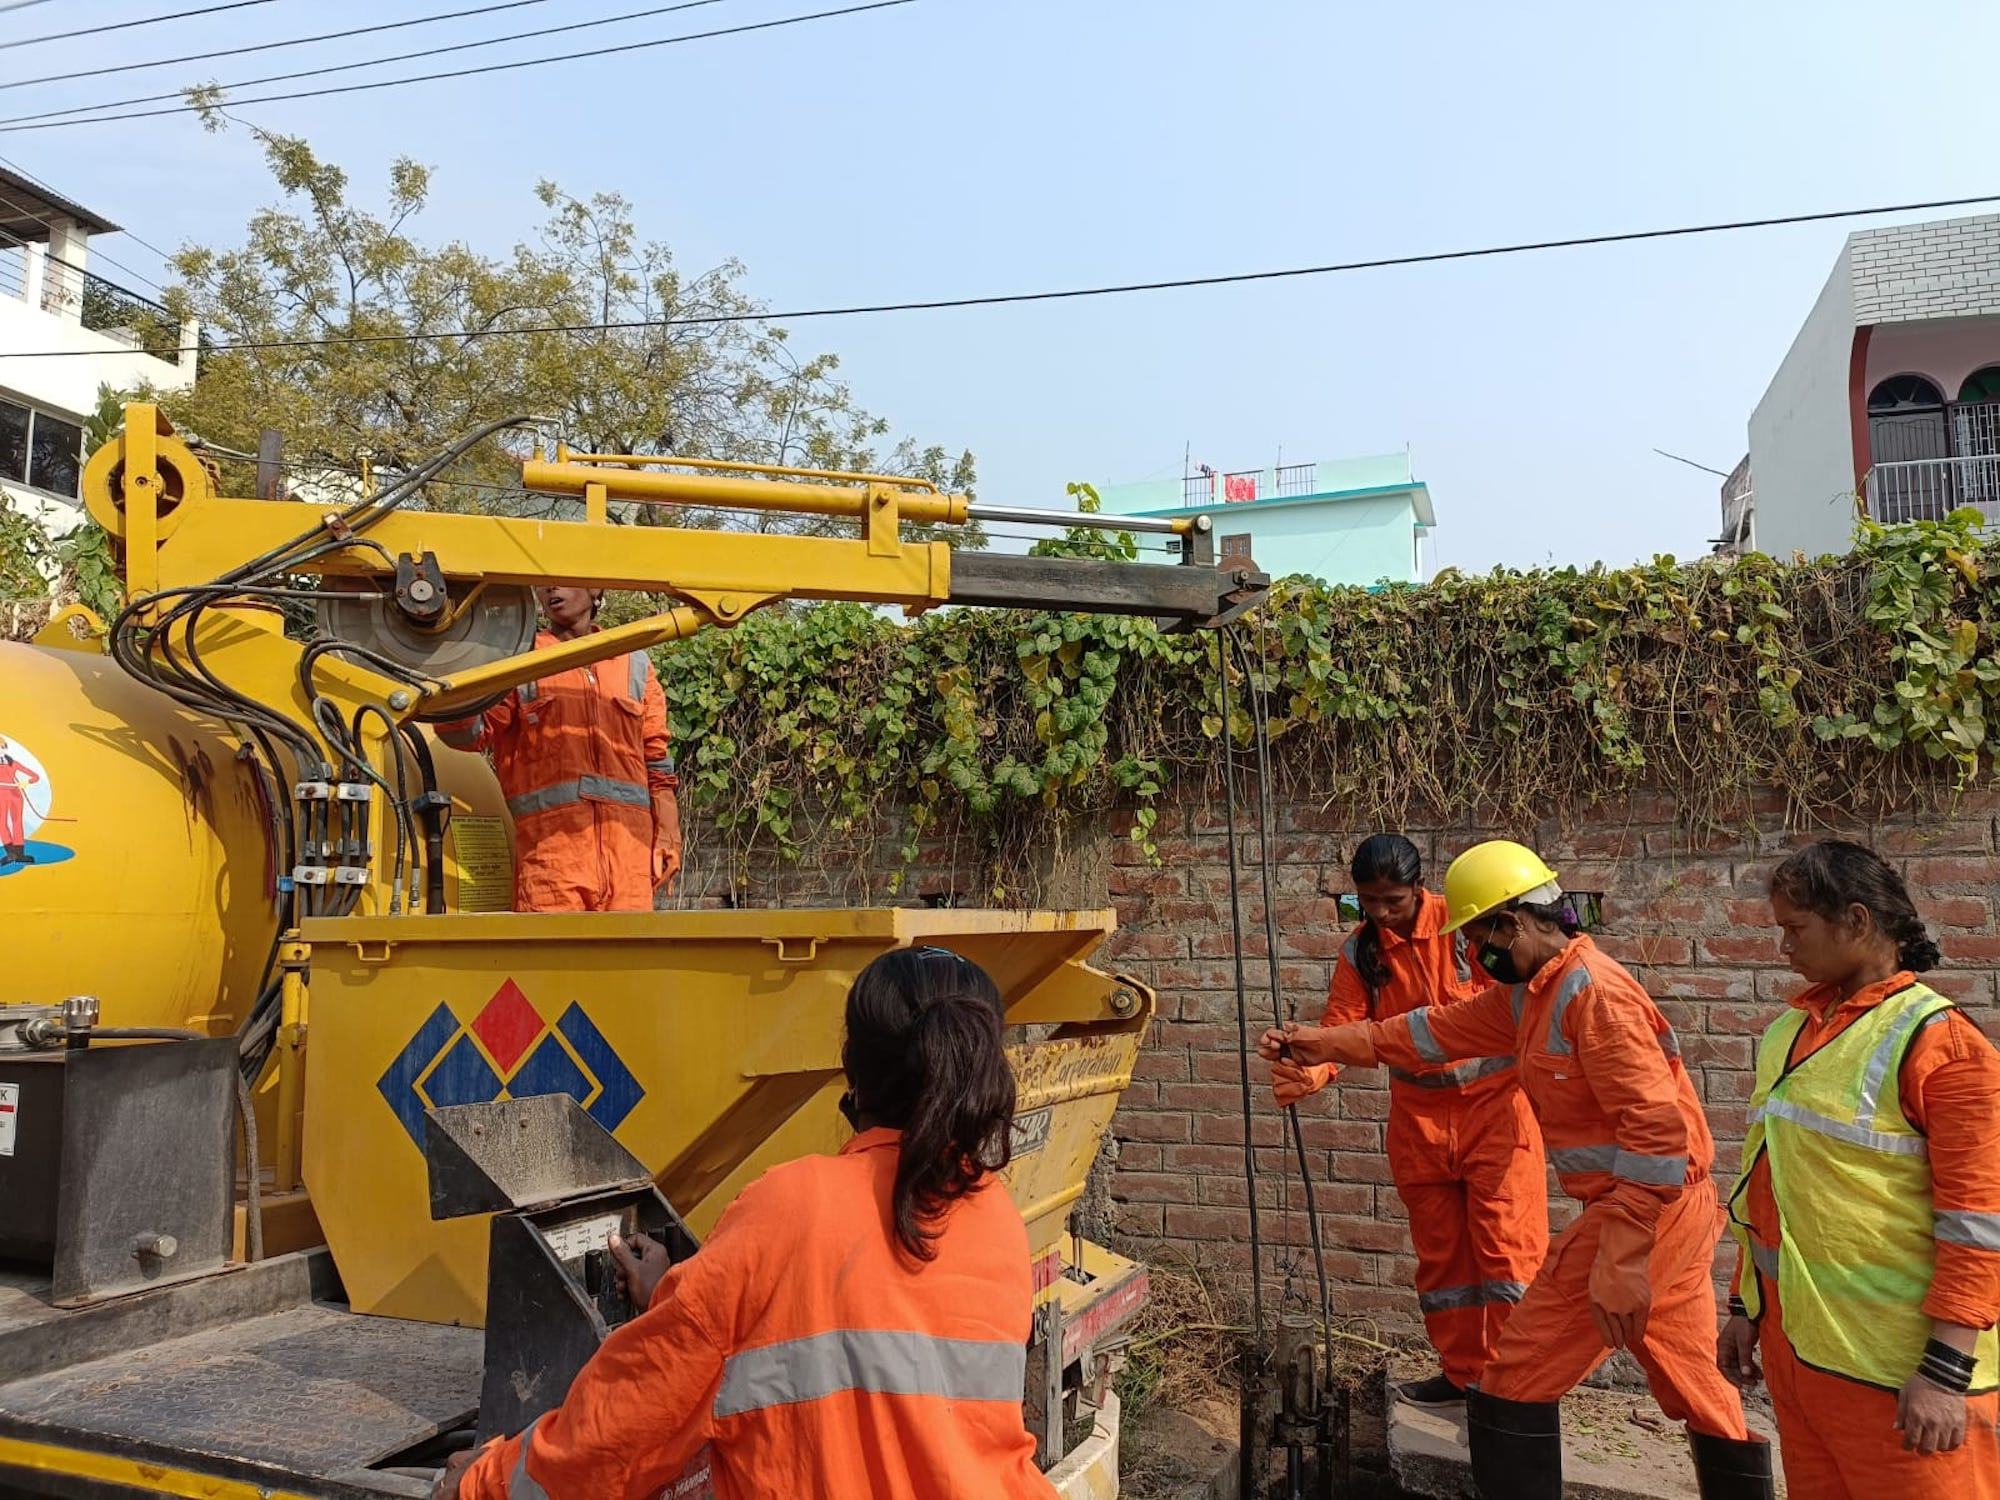 भारत के पटना शहर में, महिला सफ़ाई कर्मचारी, नई मशीनीकृत प्रणाली का उपयोग करके एक सीवर को सुरक्षित तरीक़े से साफ़ कर रही हैं.